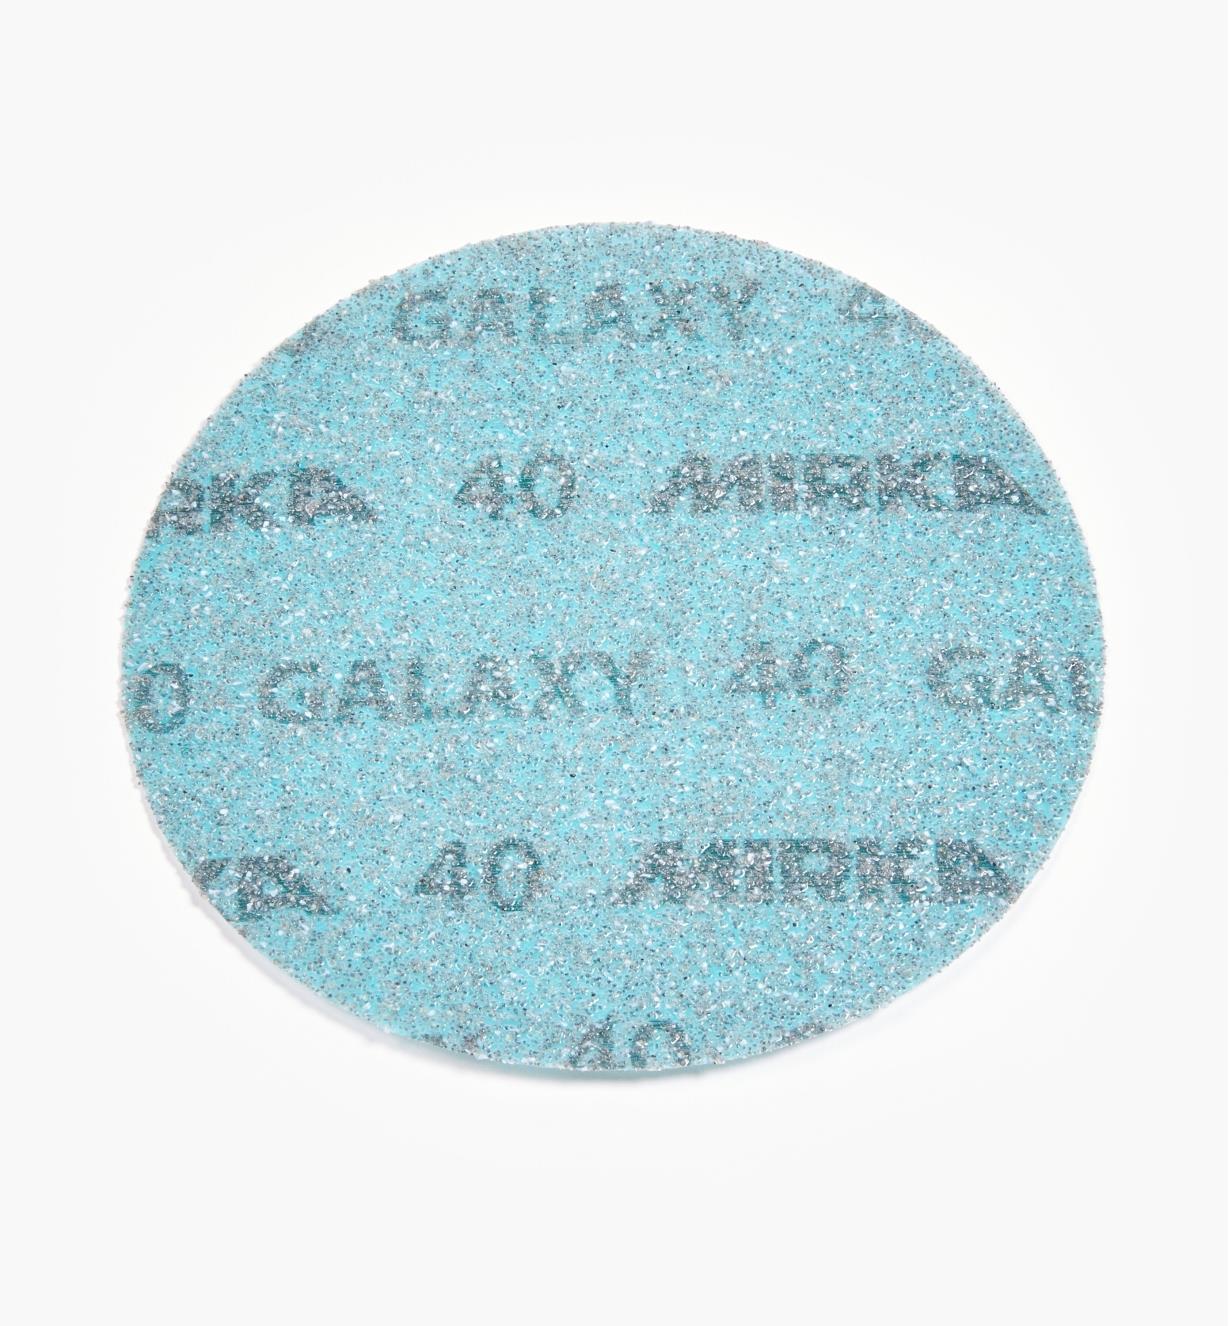 08K2101 - Disque abrasif autoagrippant Galaxy, 6 po, grain 40, l'unité